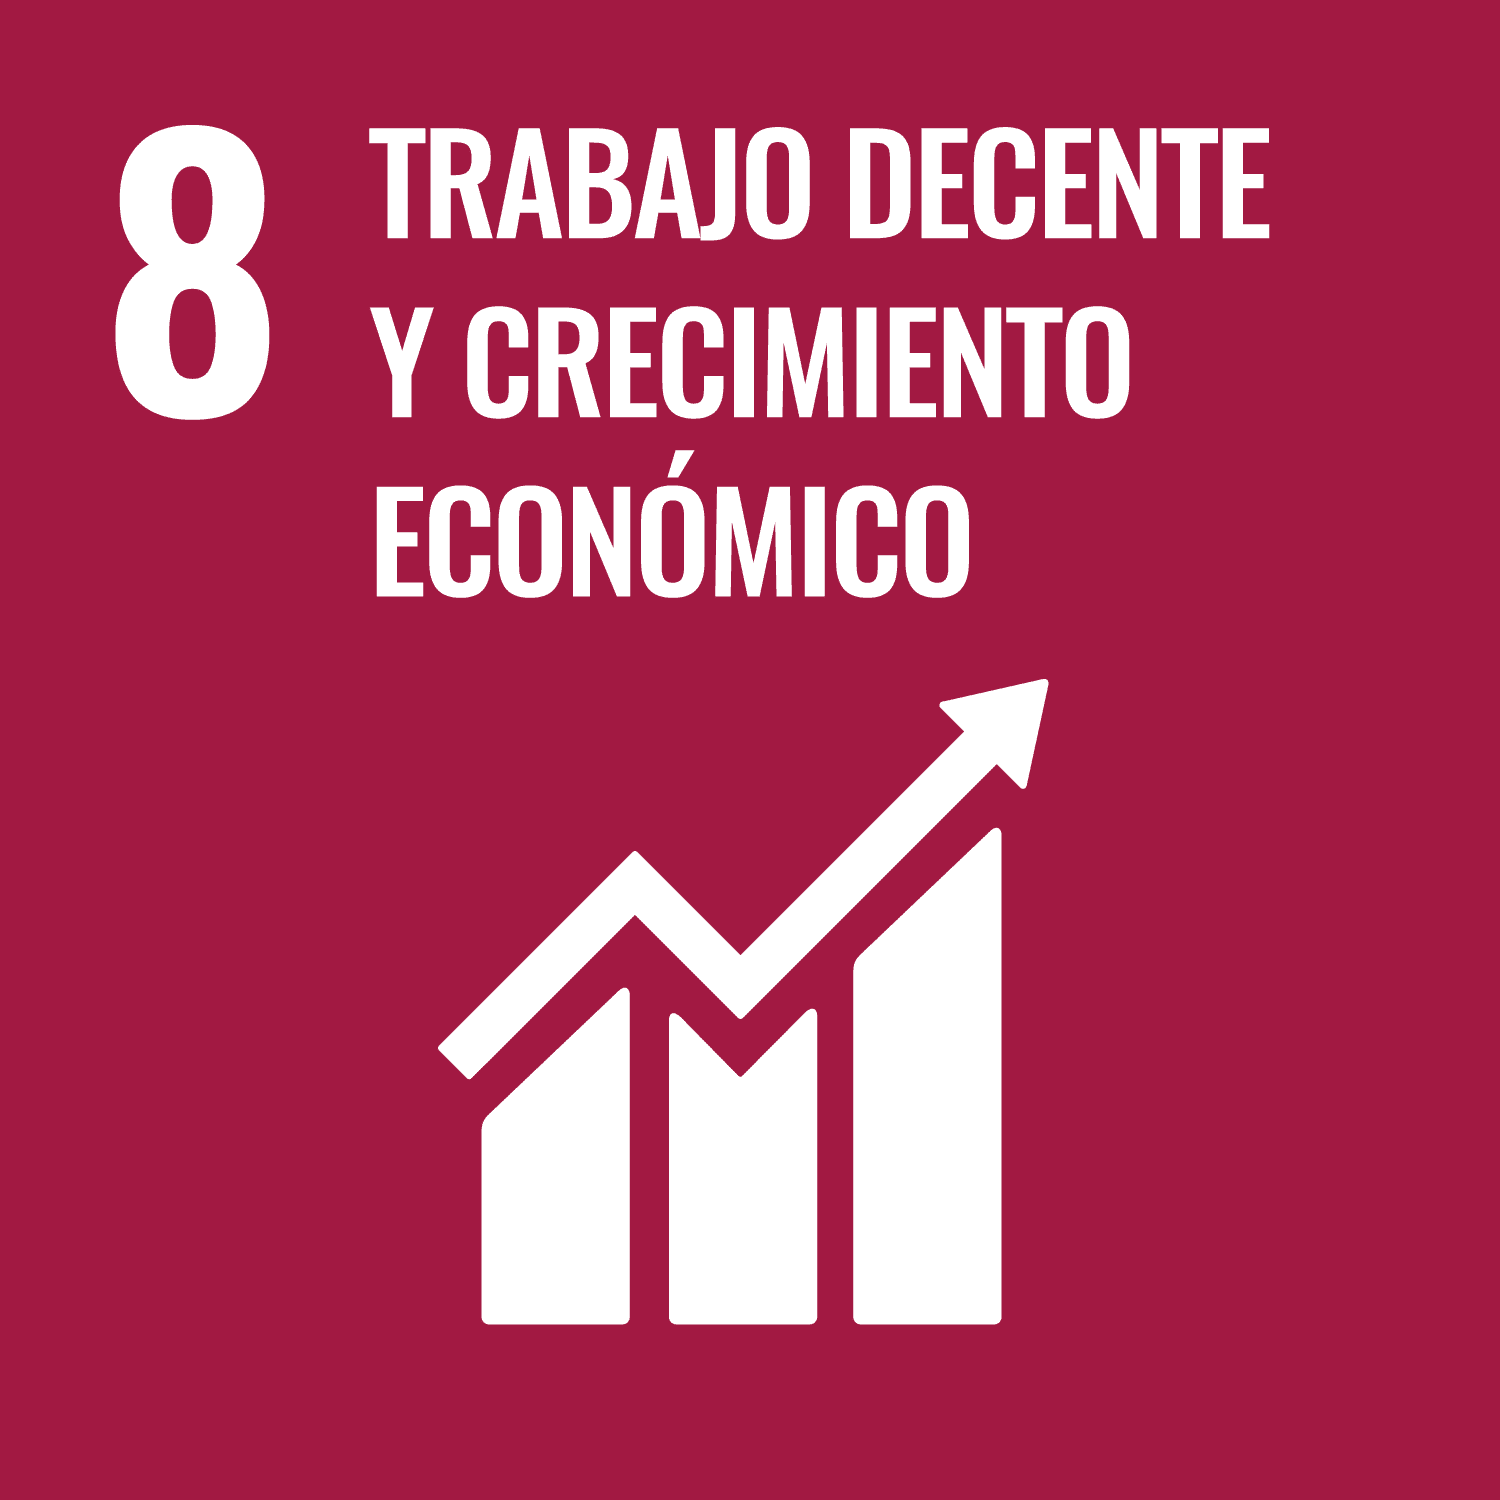 Promover el crecimiento económico sostenido,inclusivo y sostenible.